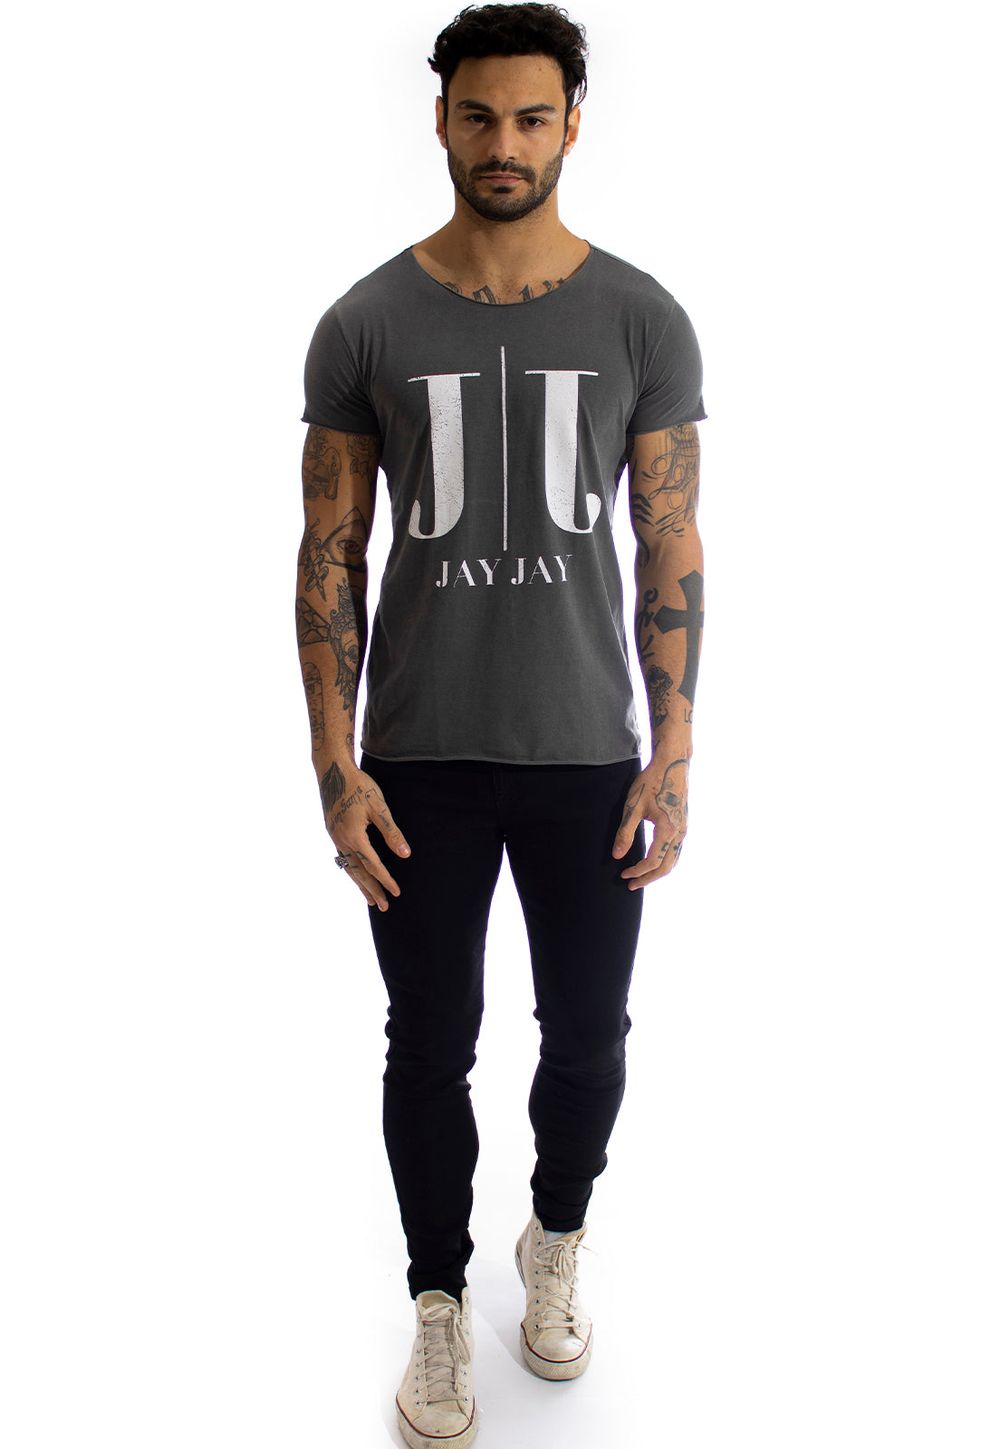 Camiseta Jay Jay Corte a Fio Water JJ Cor:Chumbo;Tamanho:P;Genero:Masculino